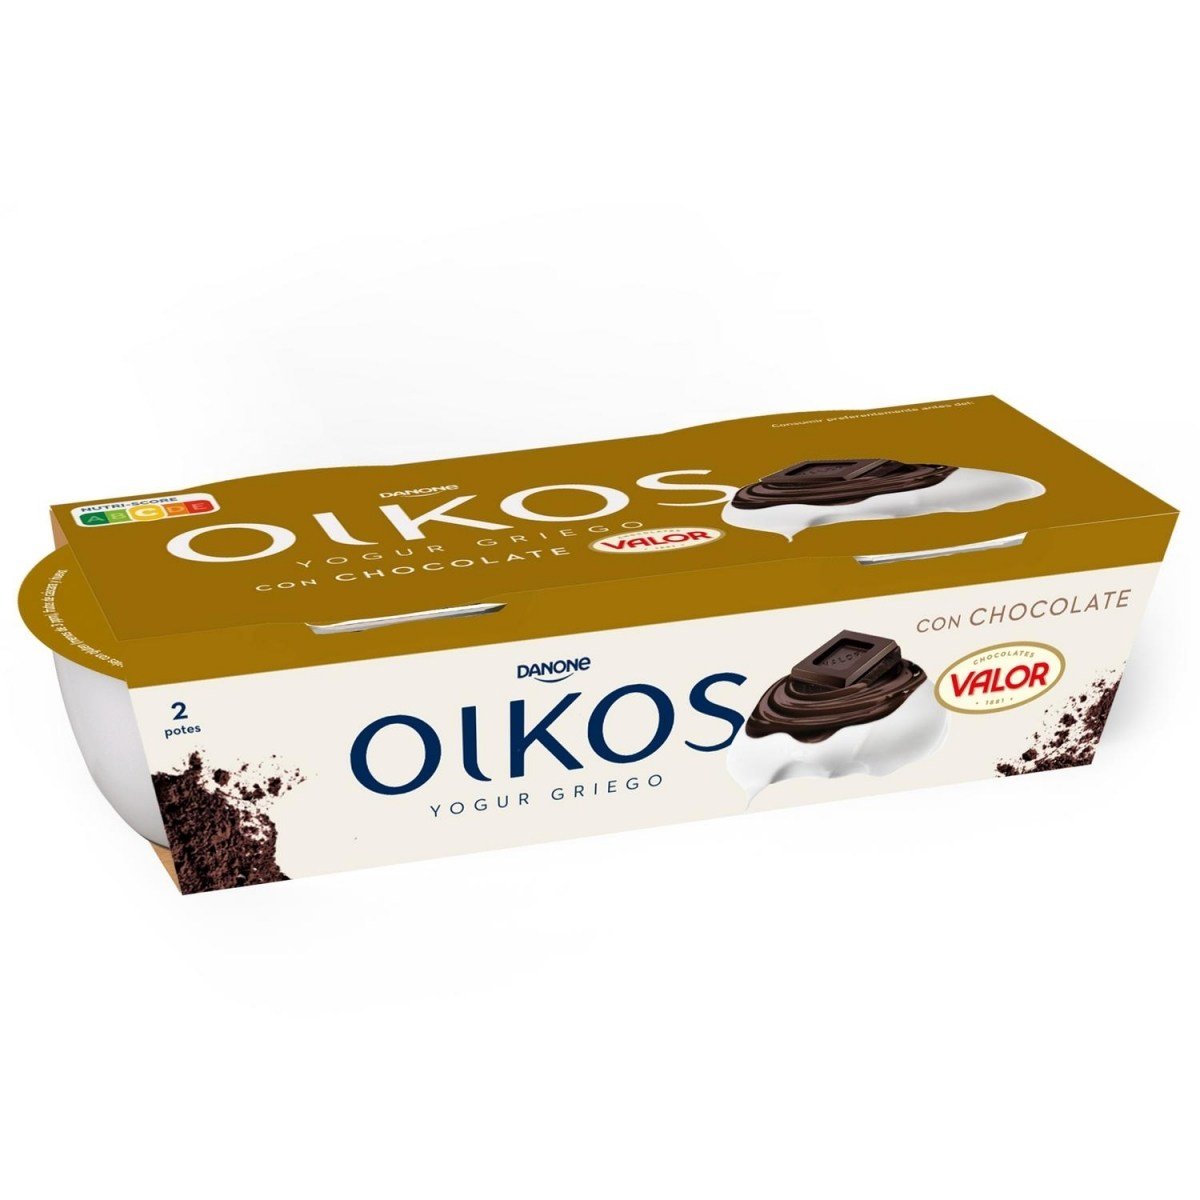 Los 3 productos de Mercadona que deberías evitar: te ahorrarás problemas - Yogur griego Oikos con Chocolate Valor